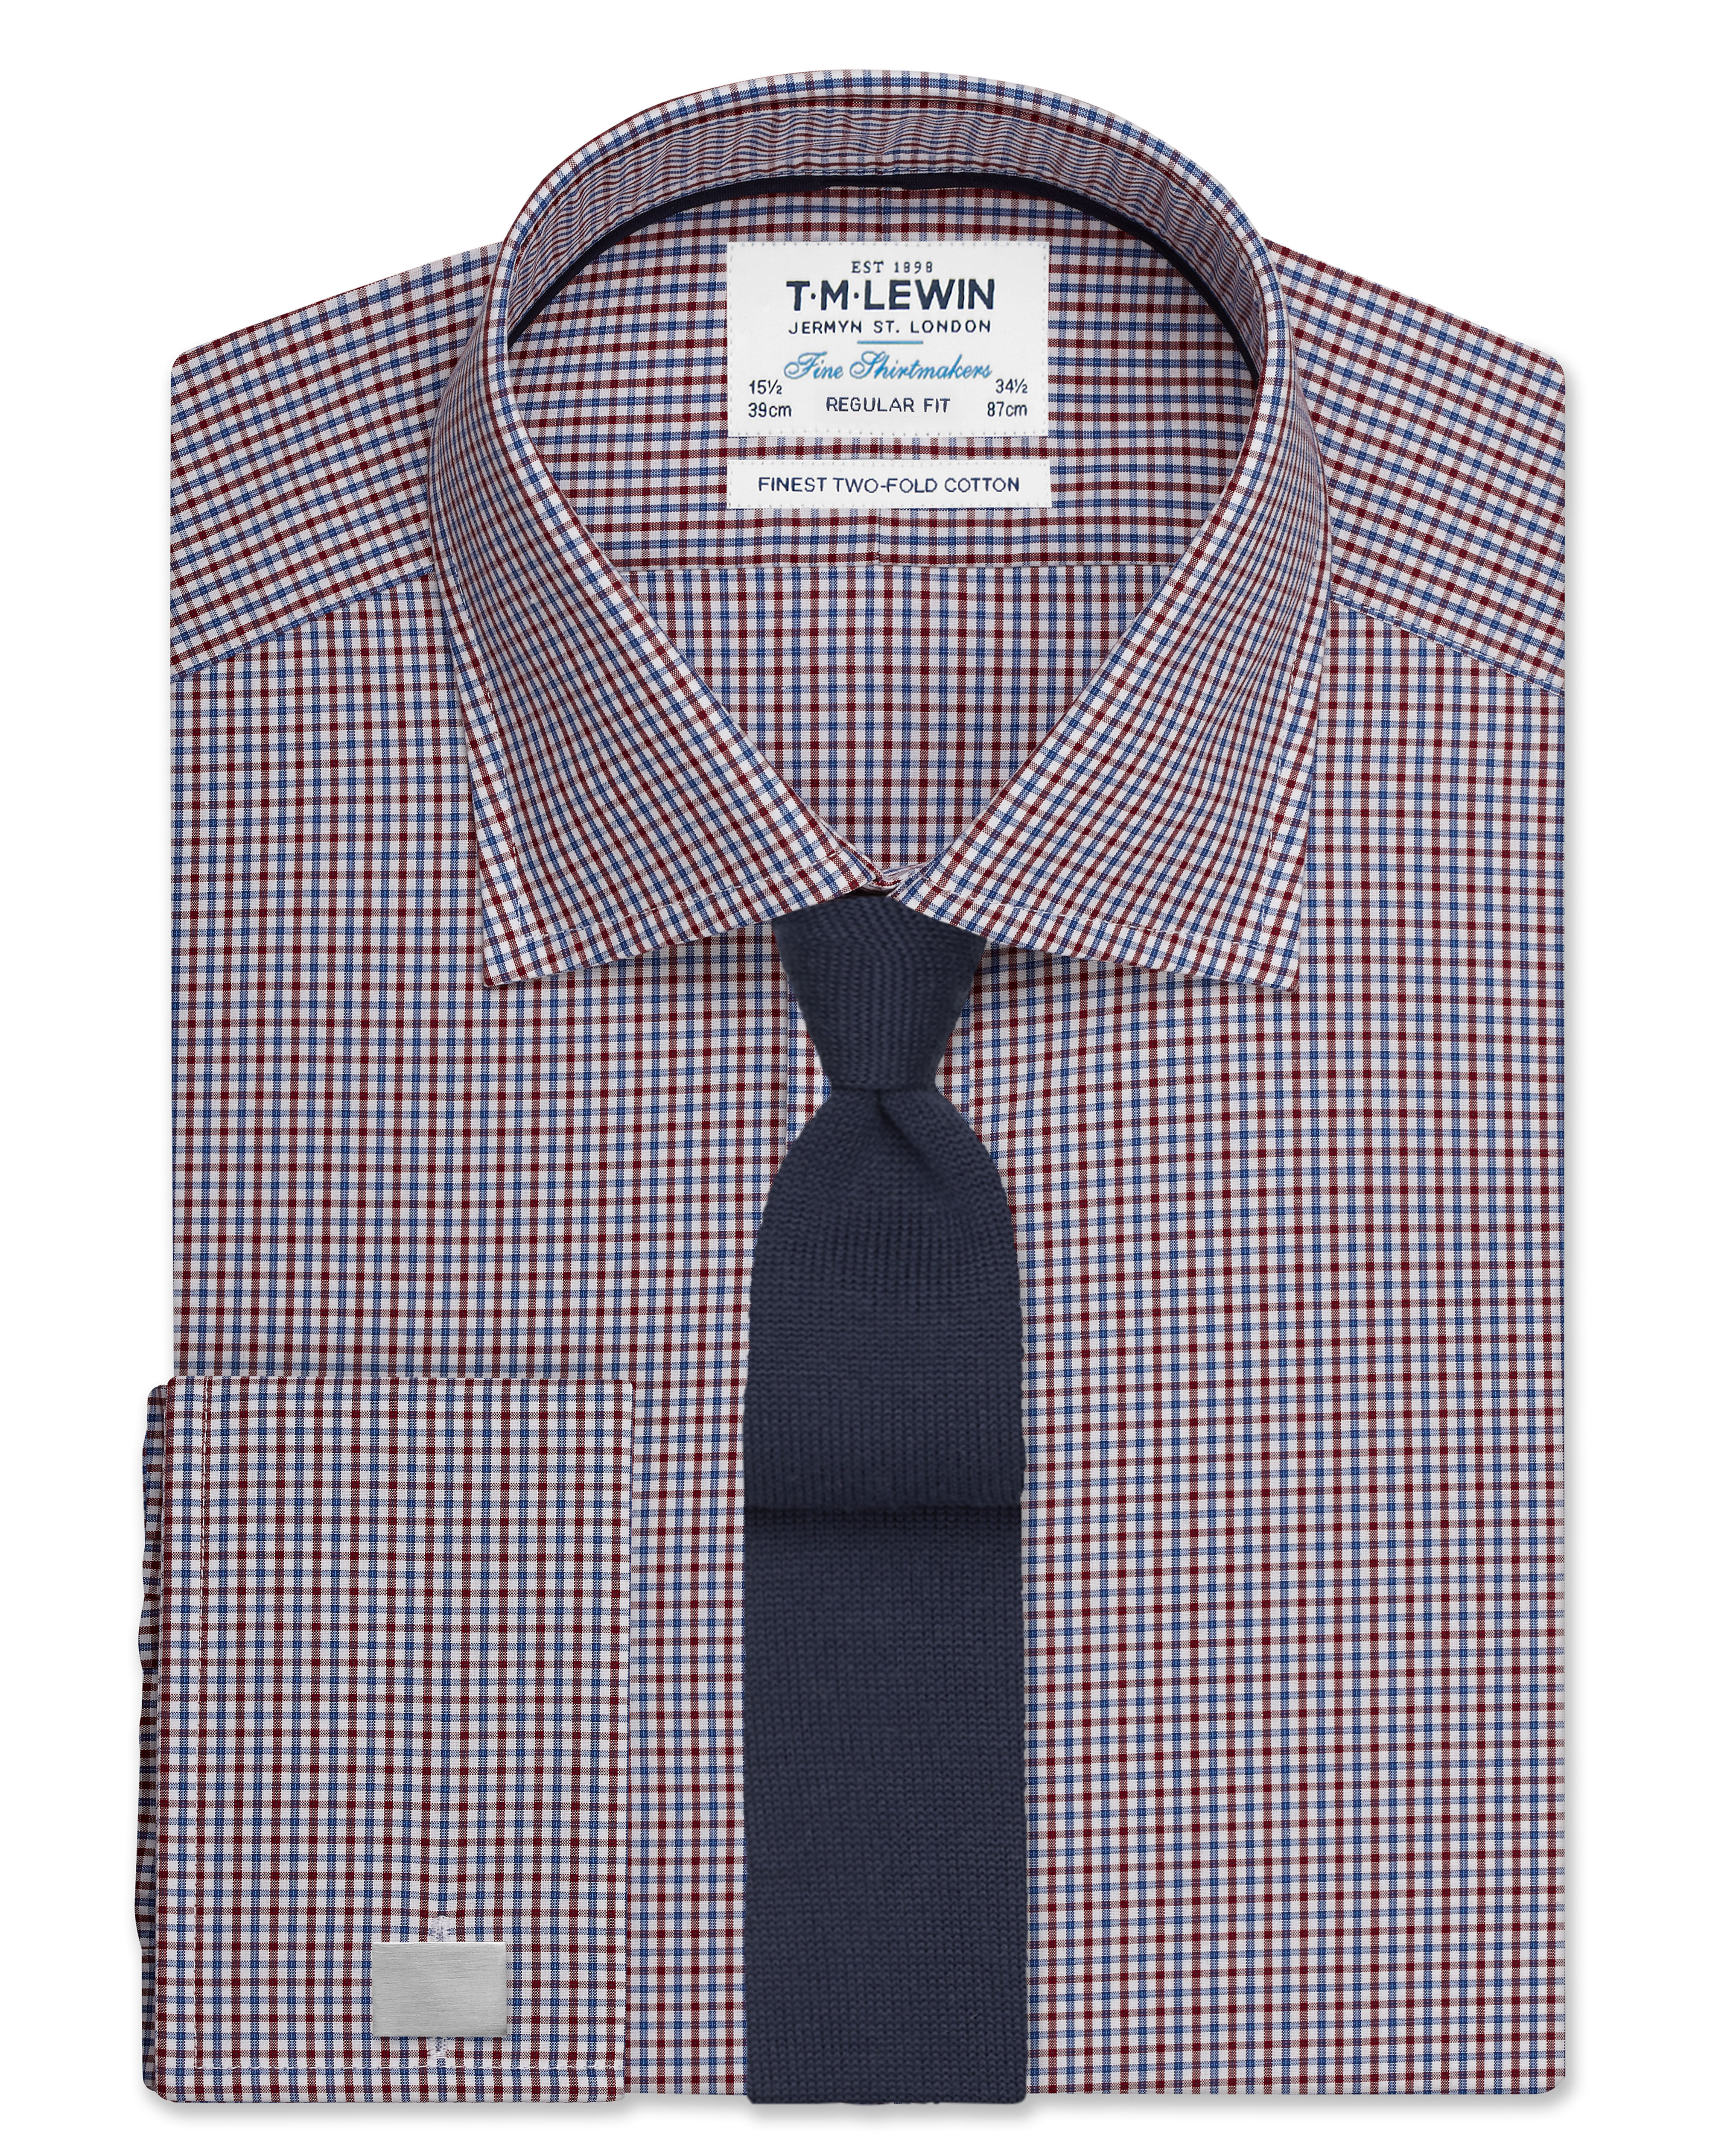 Regular Fit skjortor regular fit vinröd och marinblå mikrorutig skjorta - dubbel manschett GLSALNR